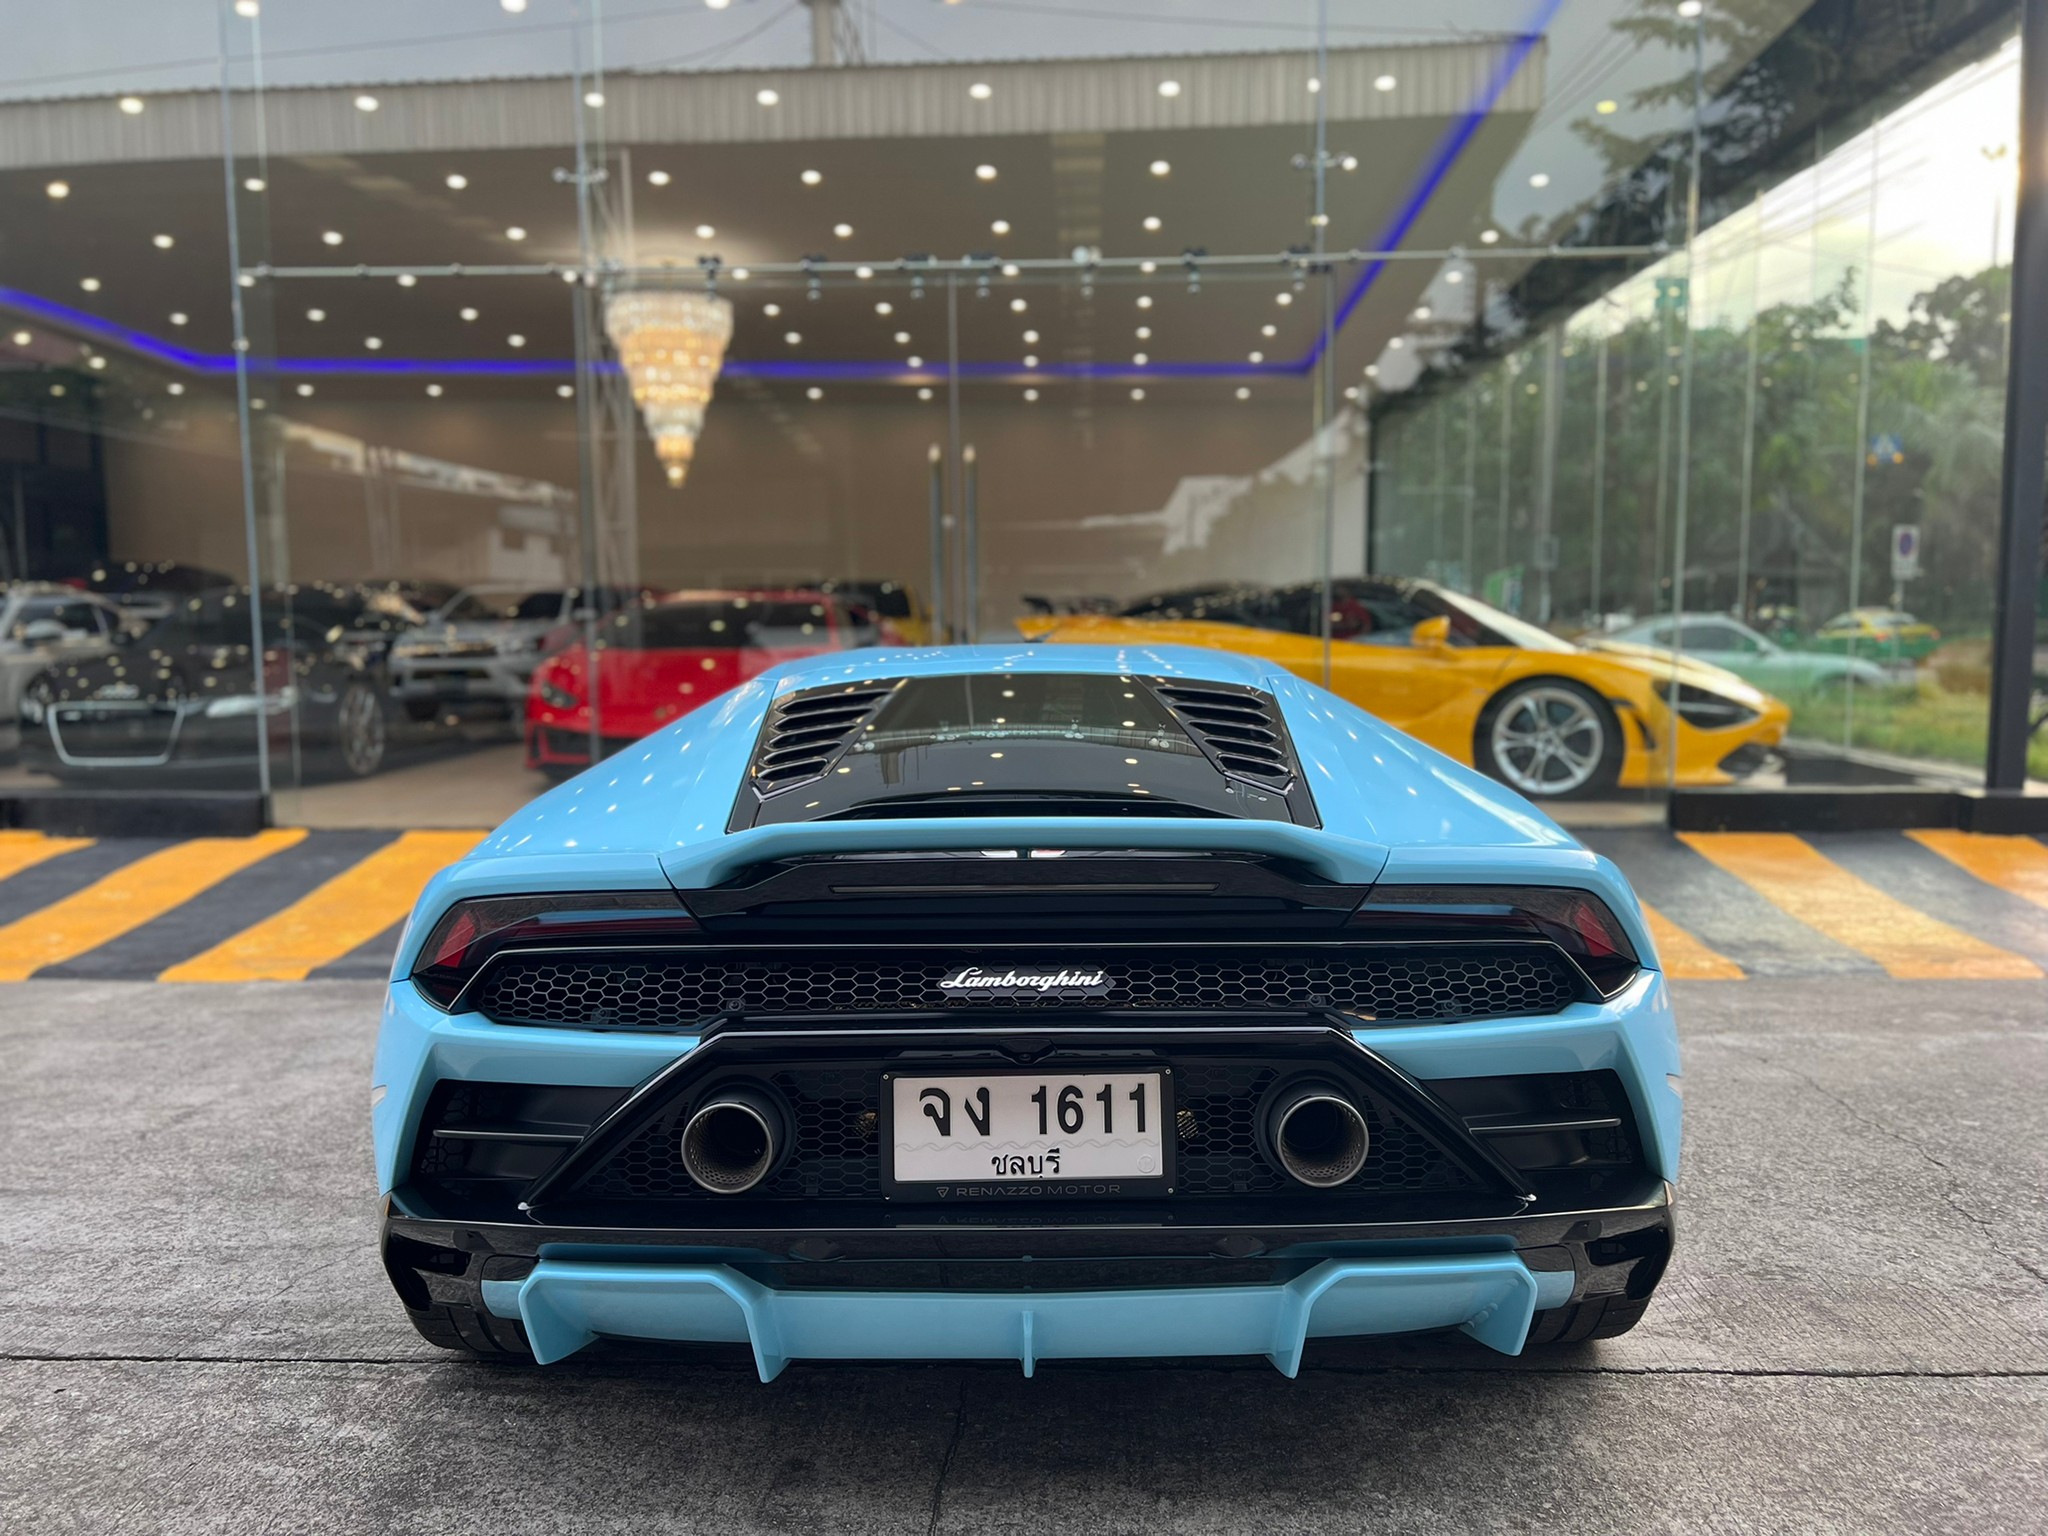 2021 Lamborghini Huracan EVO RWD à¸ªà¸µà¸Ÿà¹‰à¸²